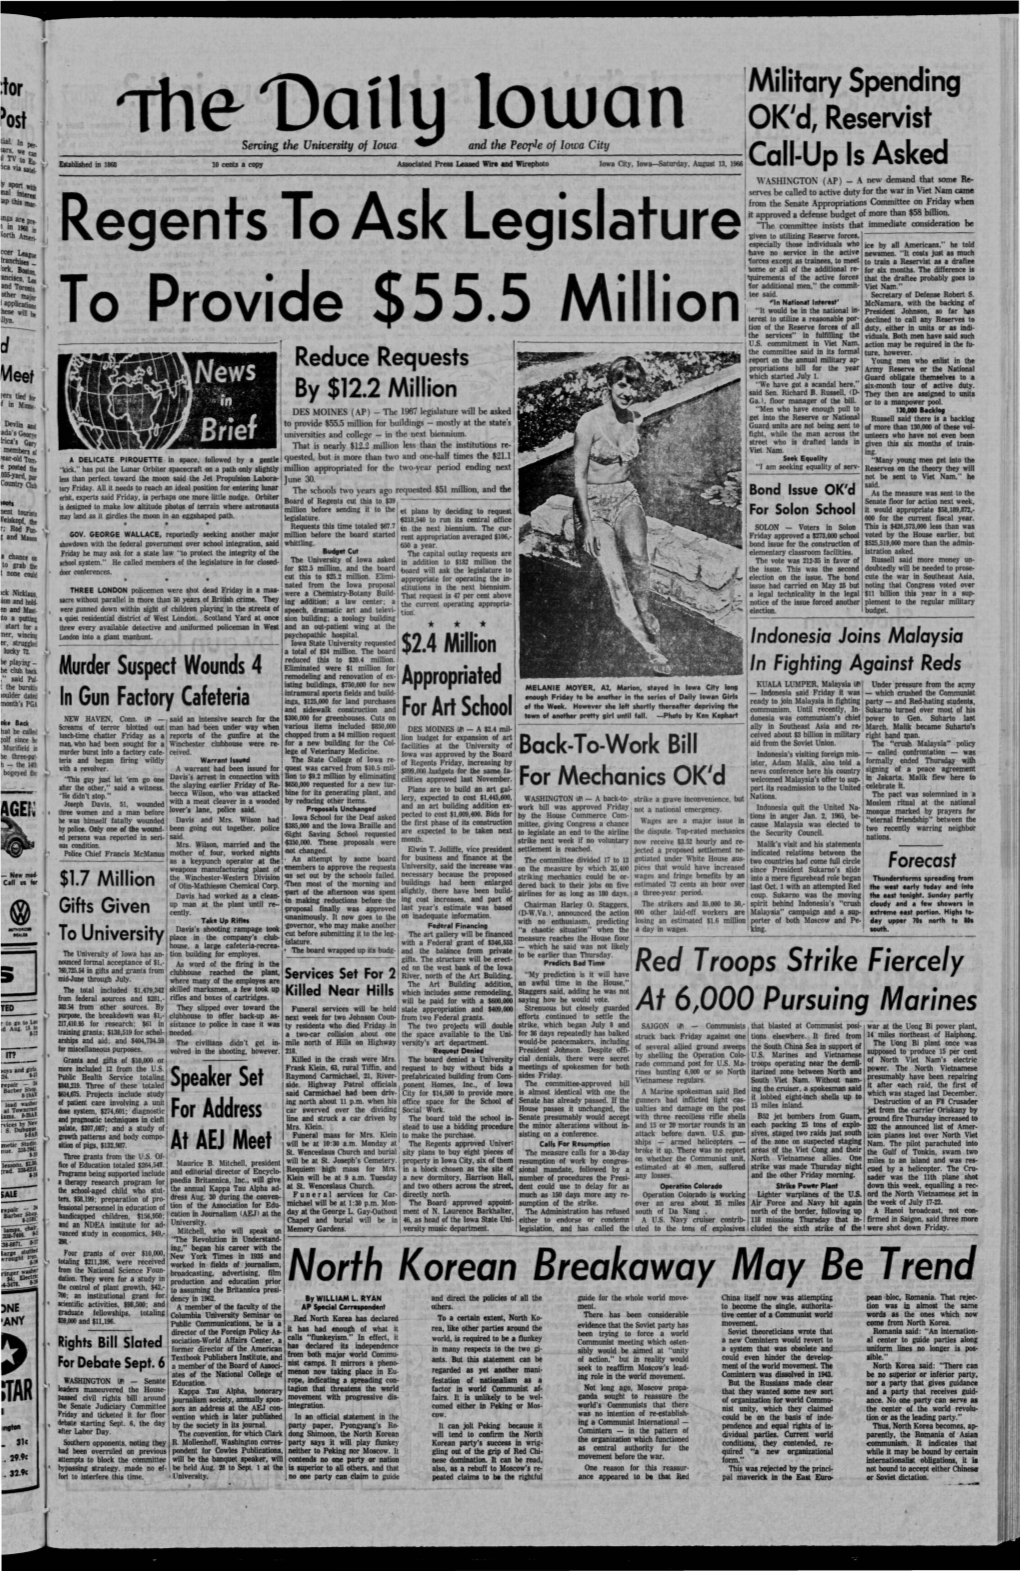 Daily Iowan (Iowa City, Iowa), 1966-08-13